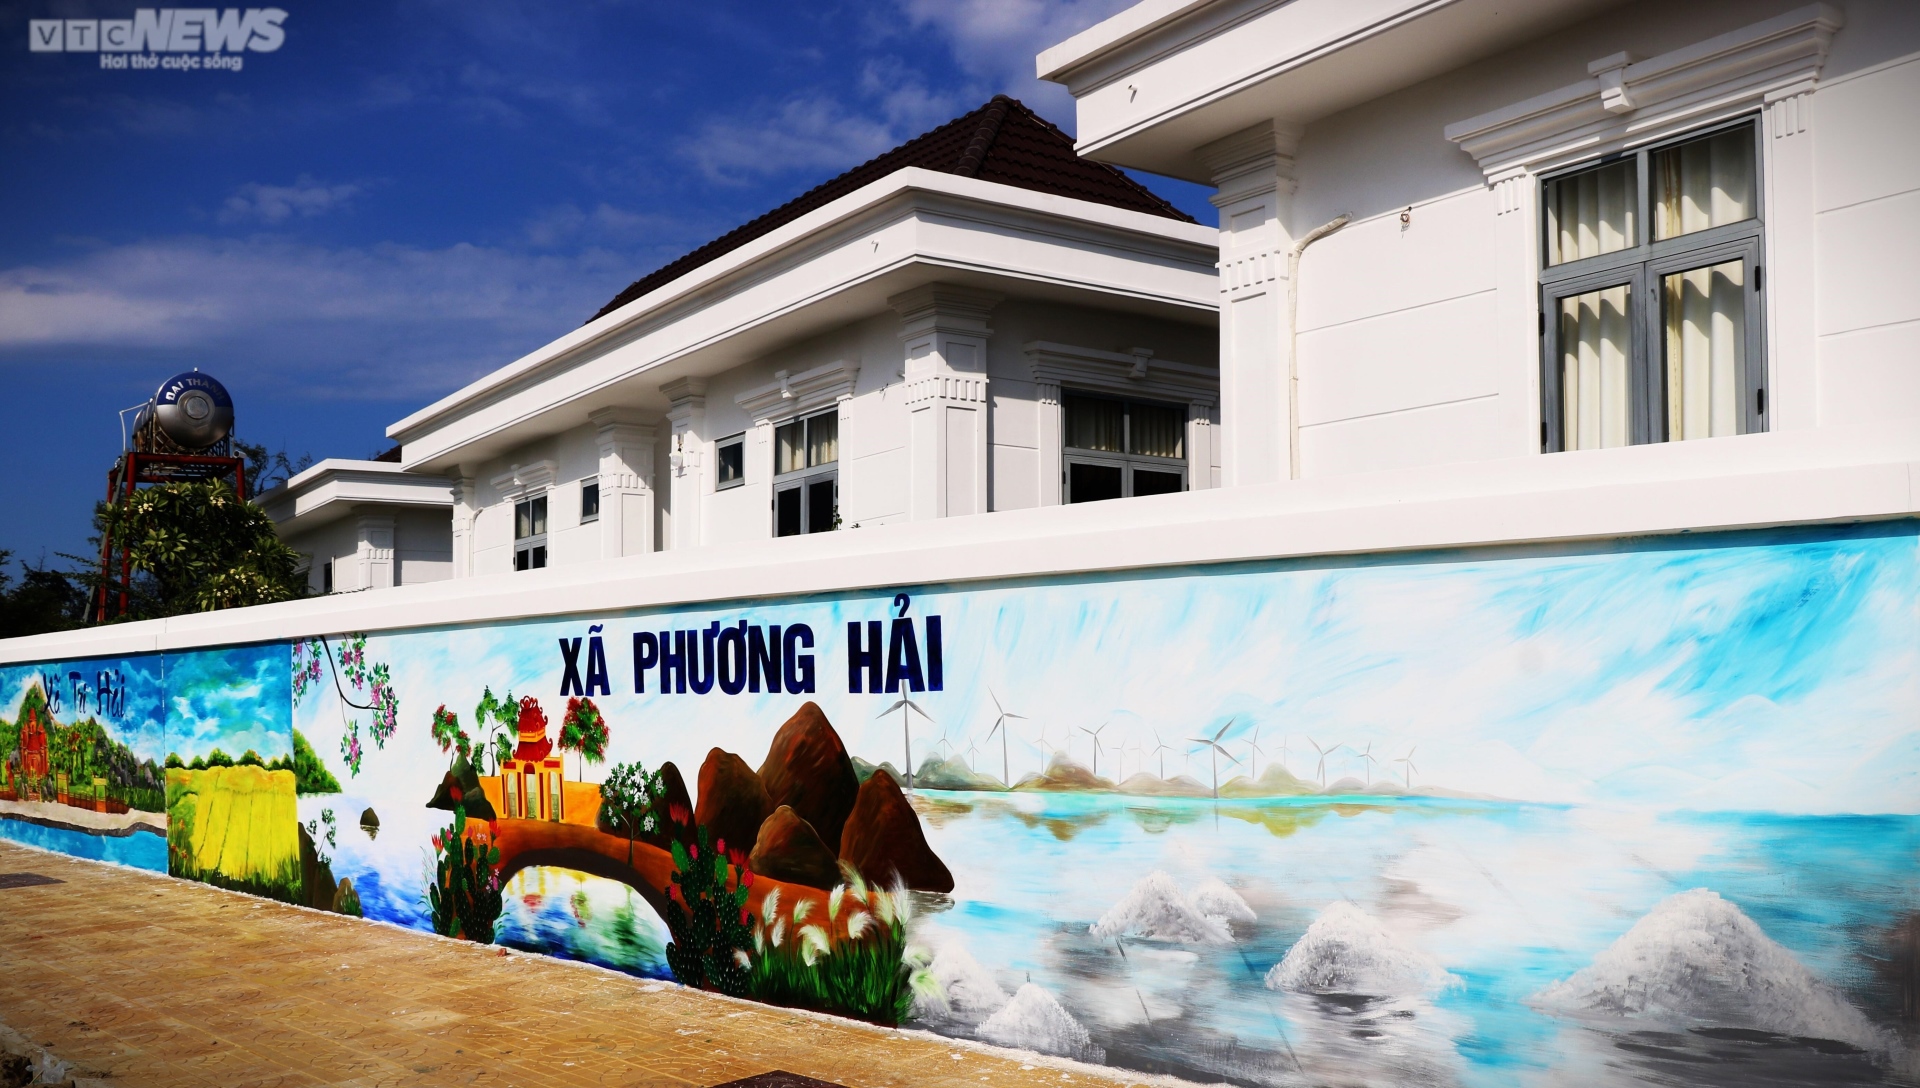 Chiêm ngưỡng bức tường tranh bích họa ven biển Ninh Thuận xác lập kỷ lục Việt Nam - Ảnh 3.